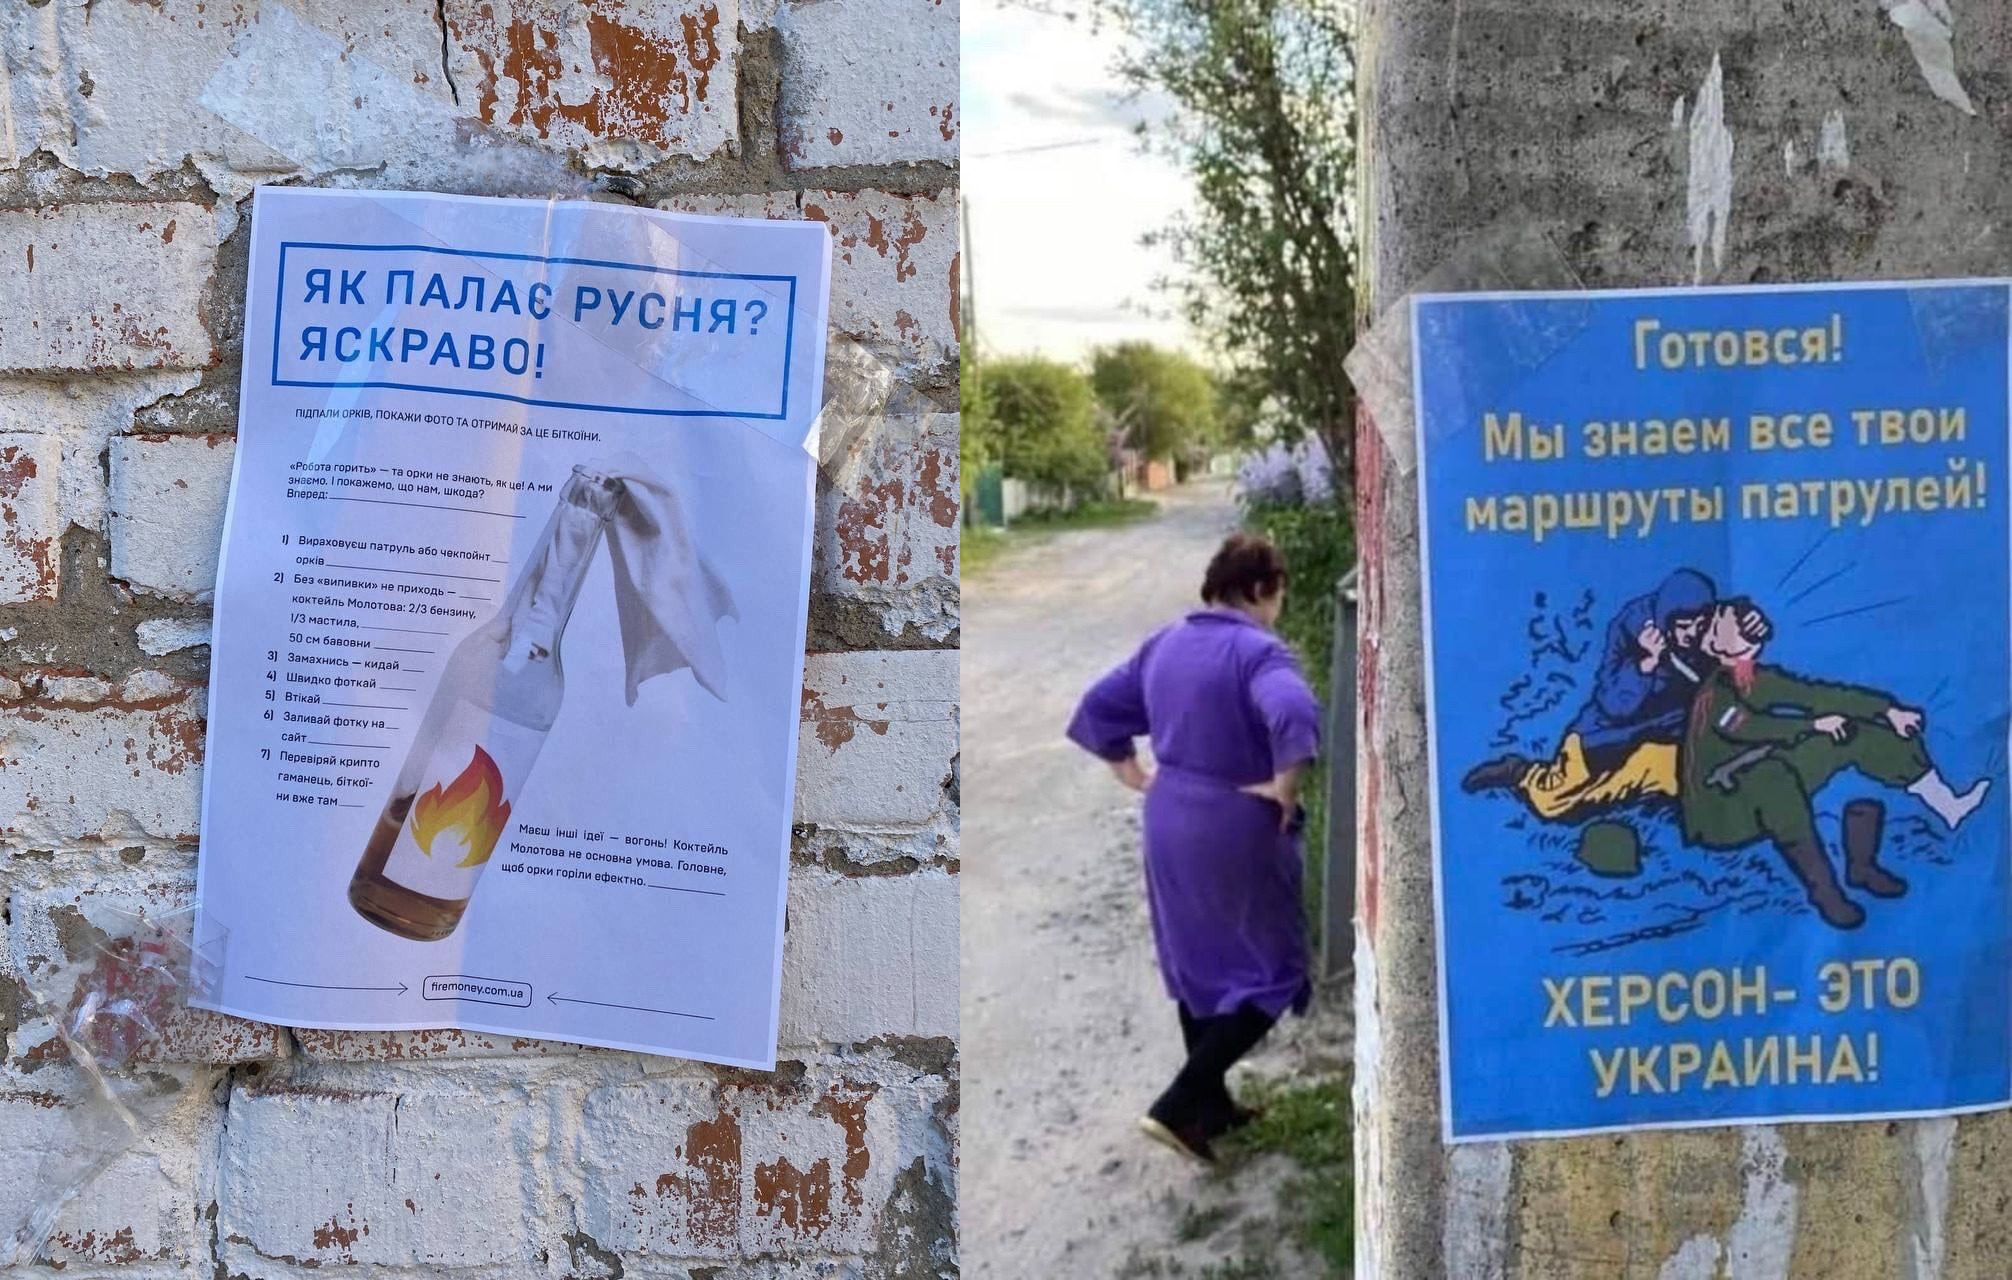 A Kherson occupata promettono bitcoin per l'equipaggiamento nemico bruciato (foto)